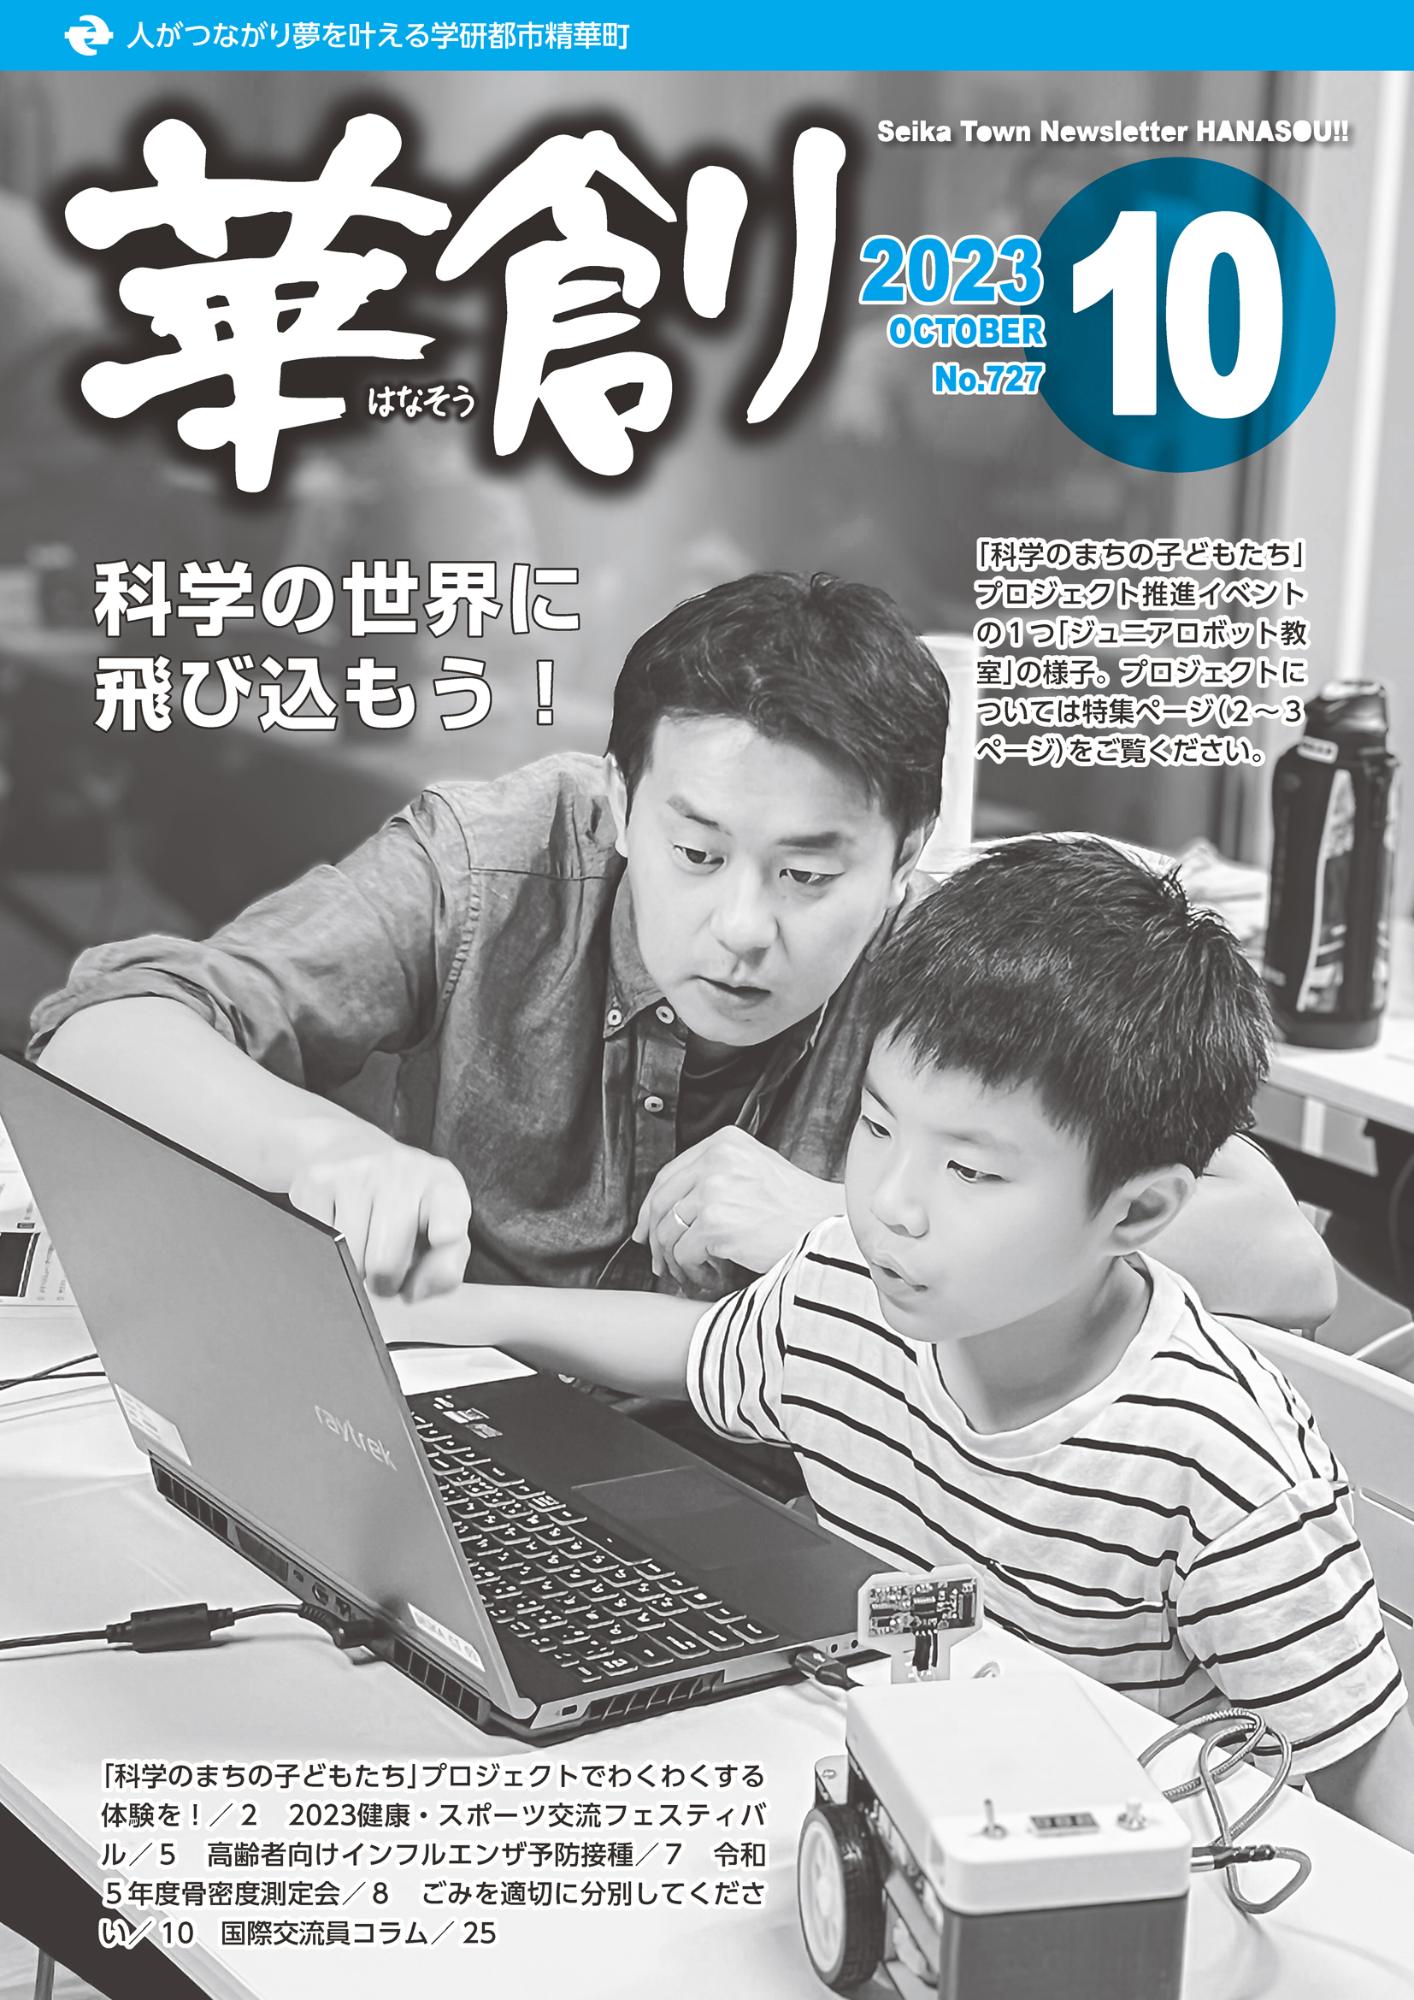 10月号表紙写真：「科学のまちの子どもたち」 プロジェクト推進イベント の1つ「ジュニアロボット教 室」で親子がパソコンの画面を見ている様子。